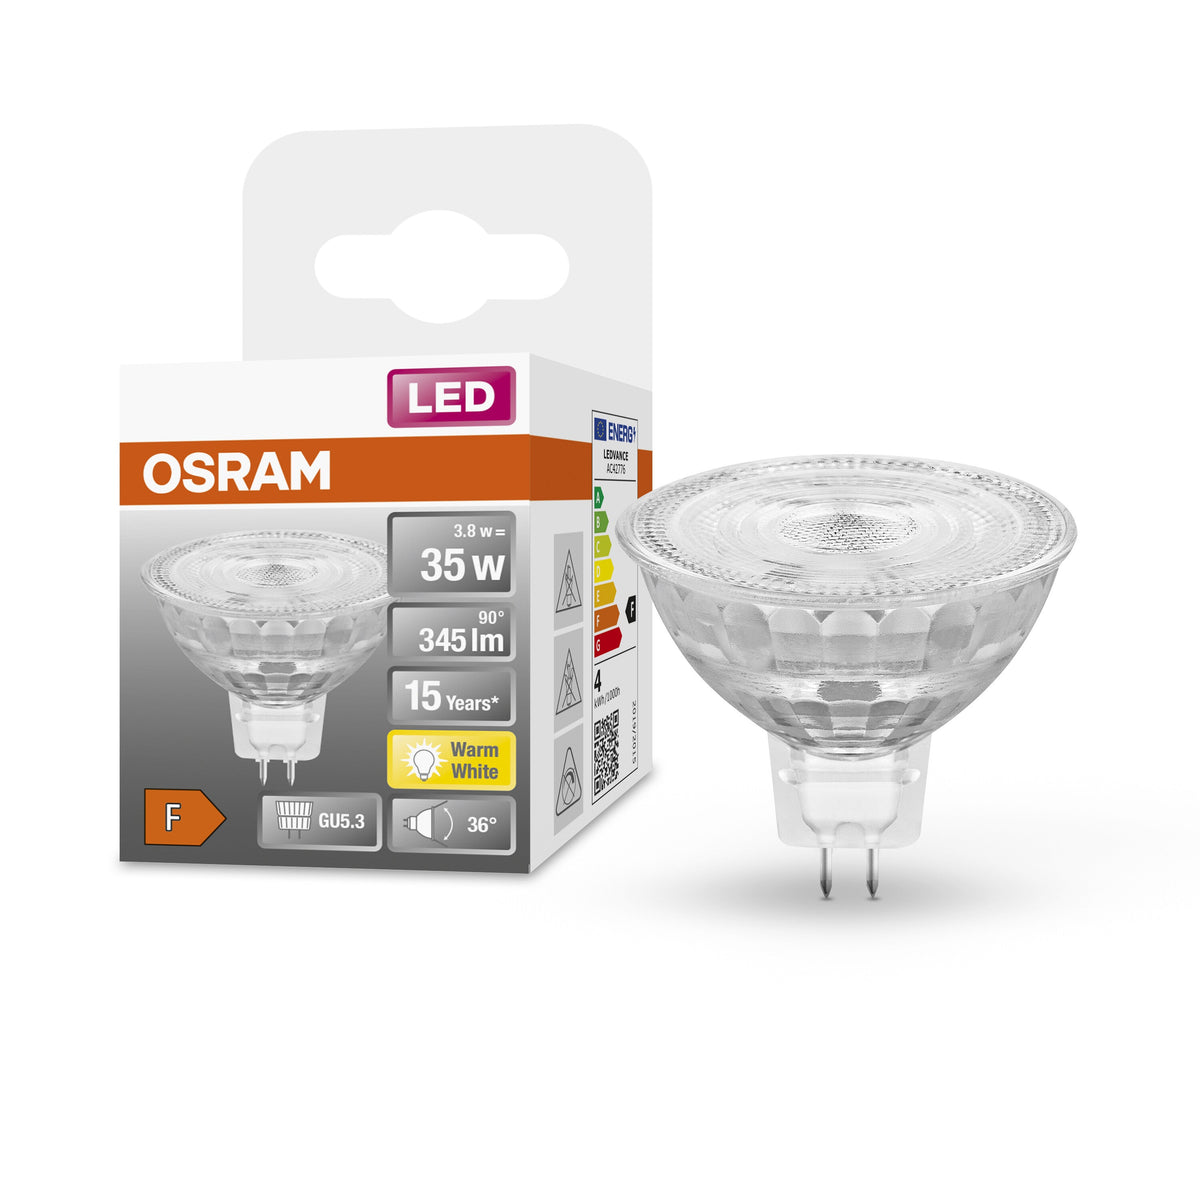 Ampoule LED à réflecteur OSRAM MR16 avec culot GU5.3, blanc chaud (2700K), spot en verre, 3,80W, remplacement de l'ampoule à réflecteur 35W